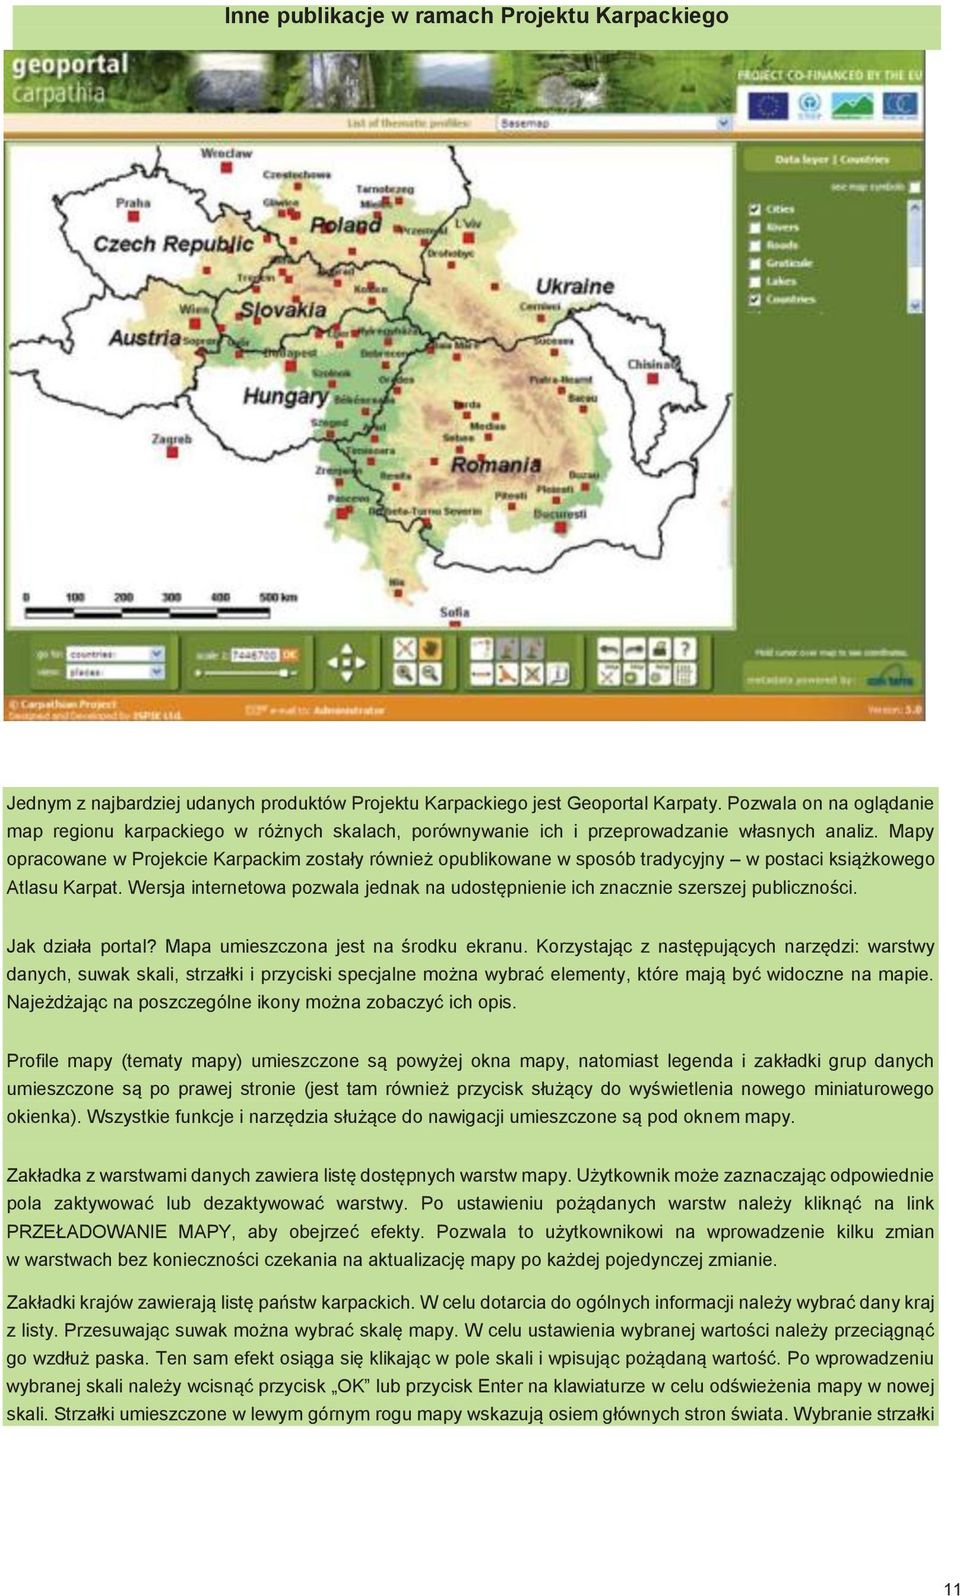 Mapy opracowane w Projekcie Karpackim zostały również opublikowane w sposób tradycyjny w postaci książkowego Atlasu Karpat.